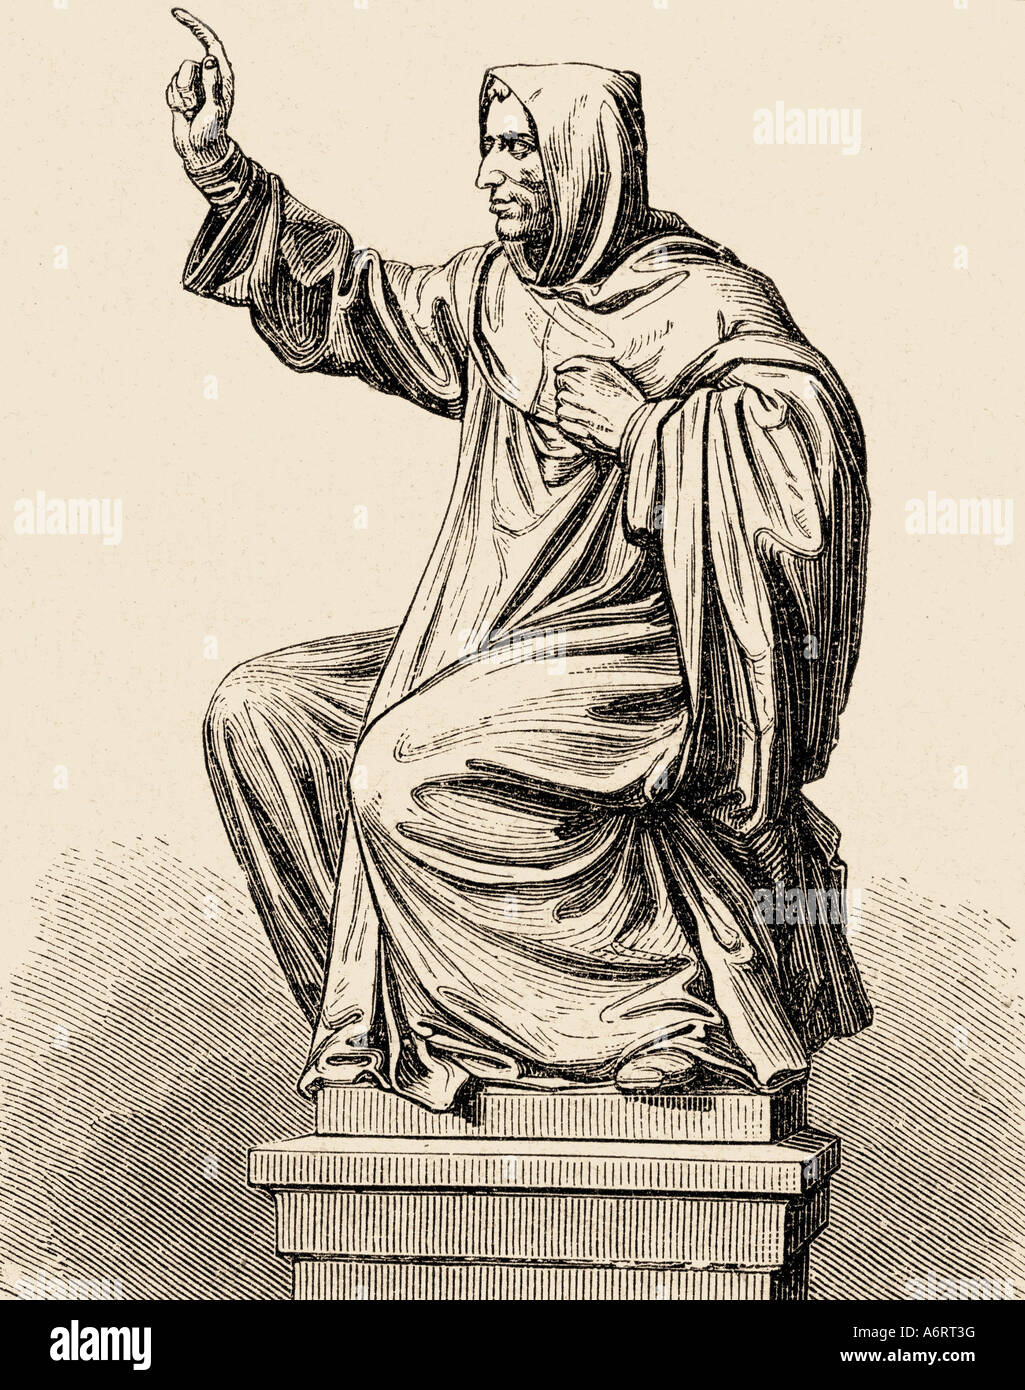 Savonarola, Girolamo, 21.9.1452 - 23.5.1498, italienischer Geistlicher, Ganzkörperansicht, Statue in Worms, Gravur, 19. Jahrhundert, Reformer, Stockfoto